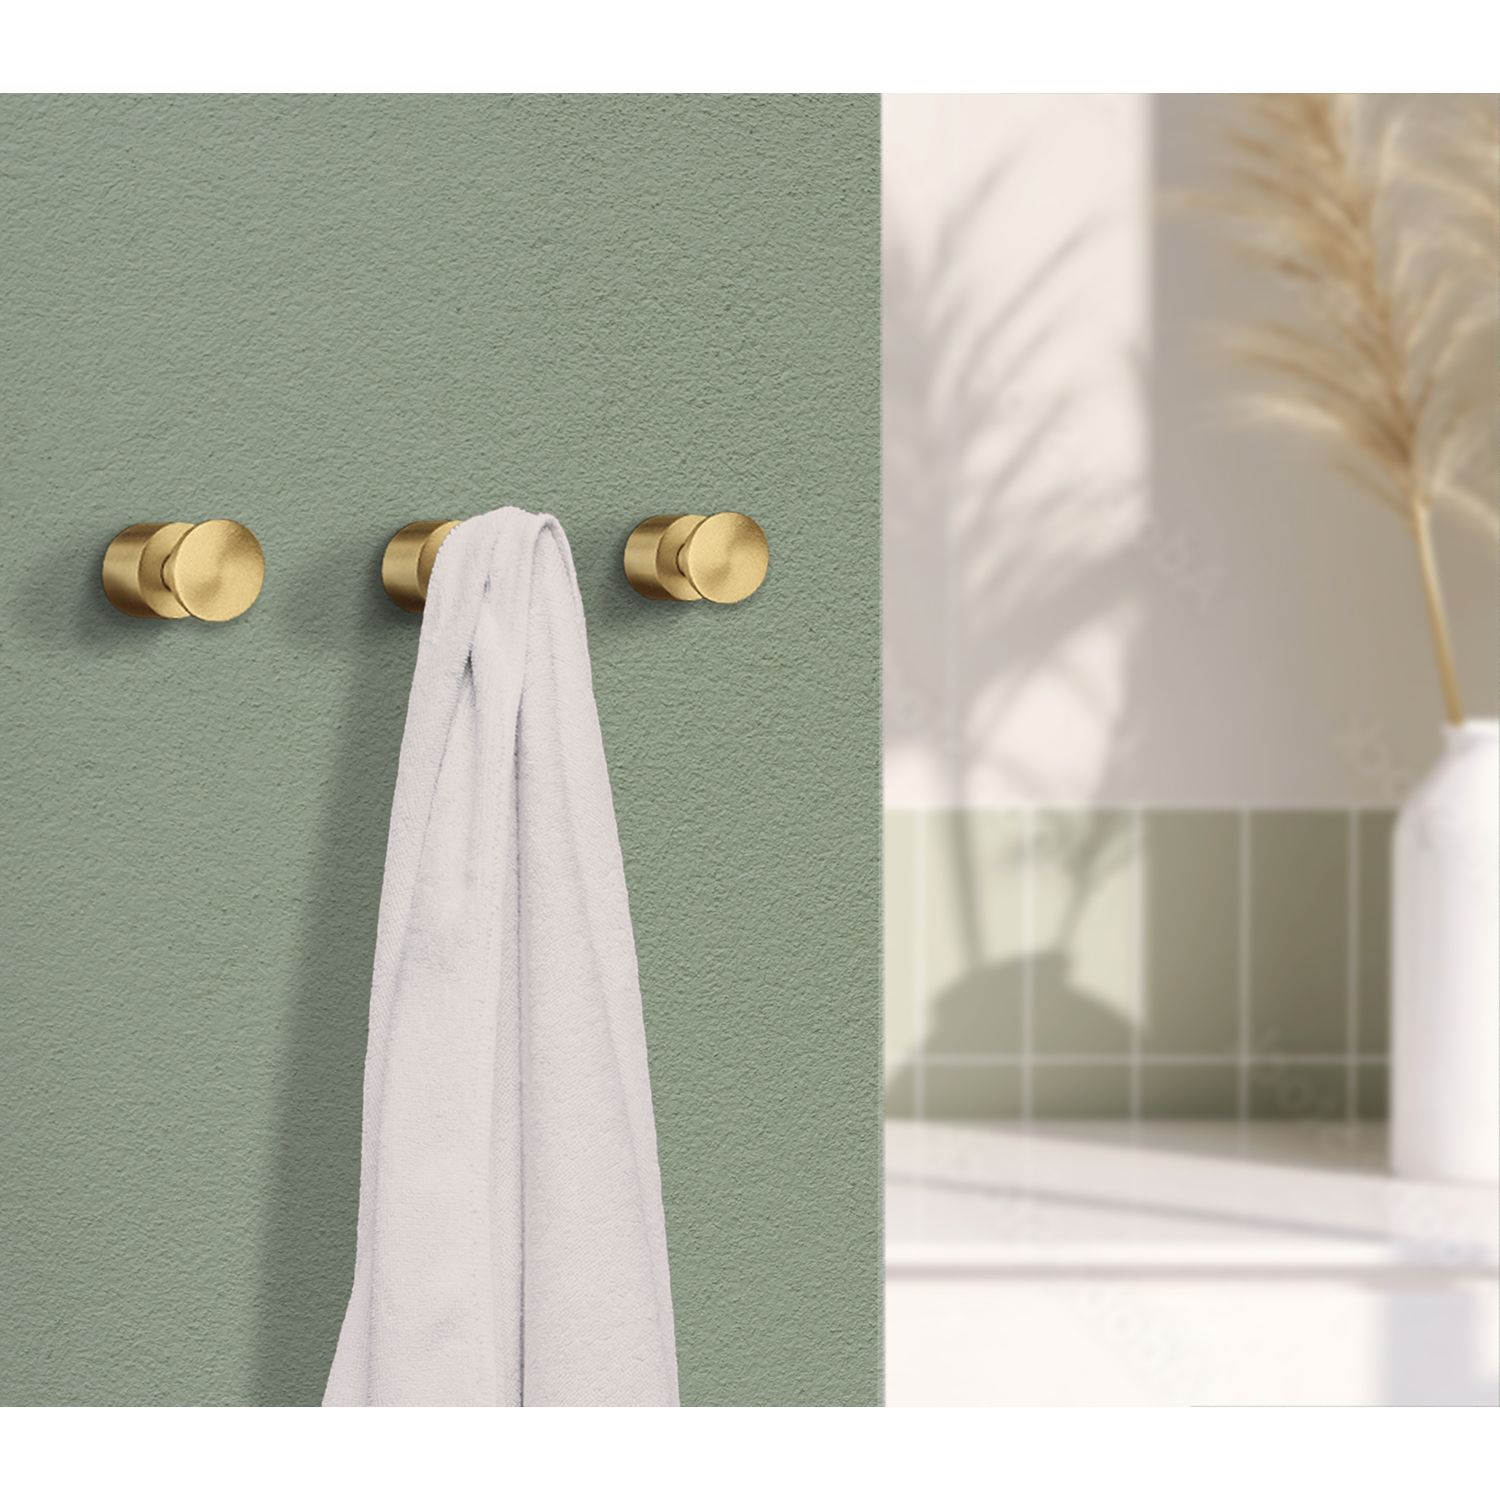 Smedbo Home Series Accessori da bagno Porta asciugamano in ottone spazzolato